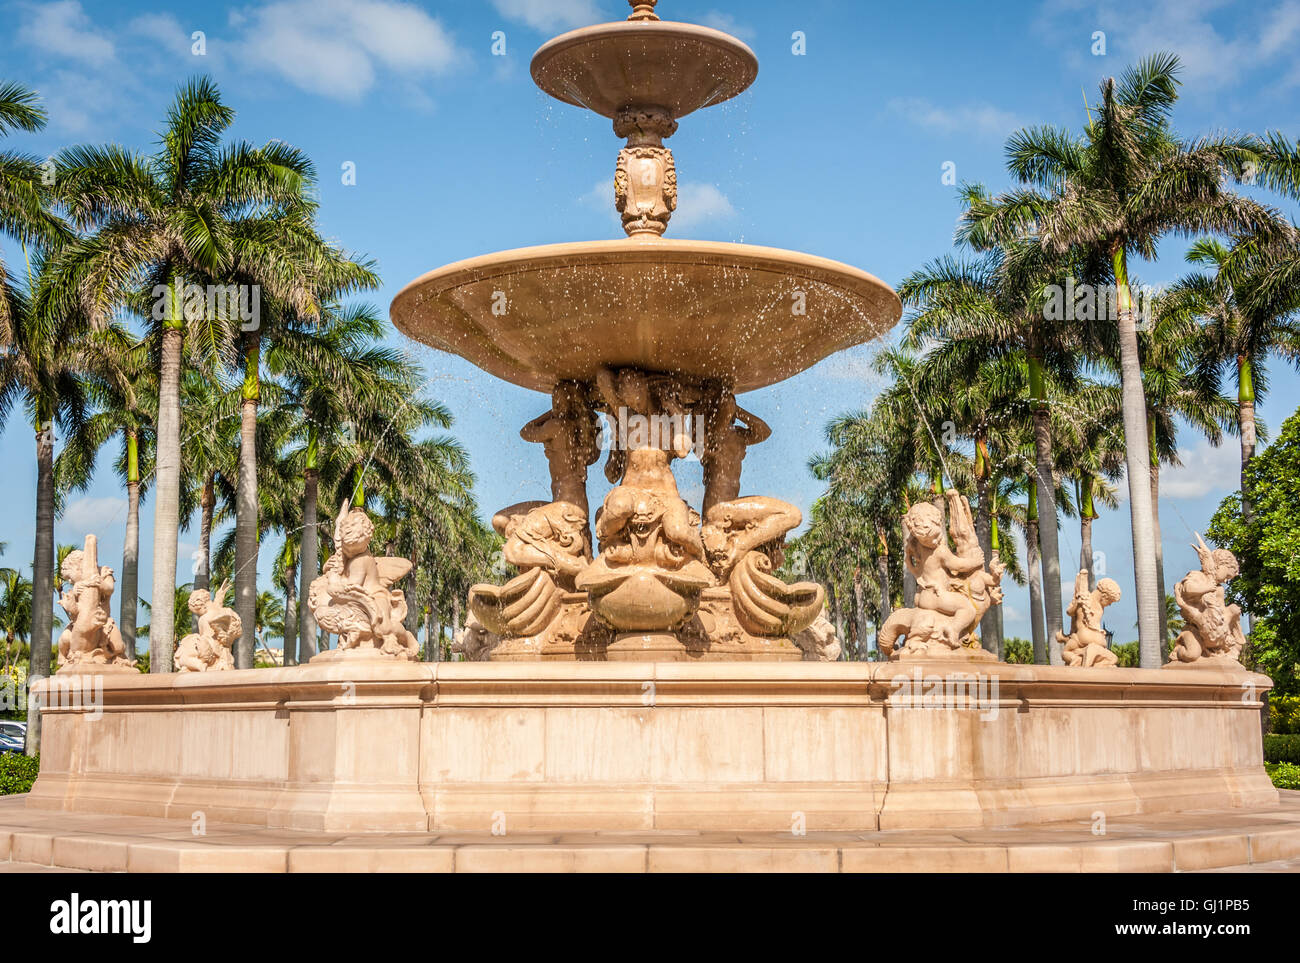 Wahrzeichen florentinischen Stil Brunnen vor The Breakers Resort in Palm Beach, Florida, USA. Stockfoto